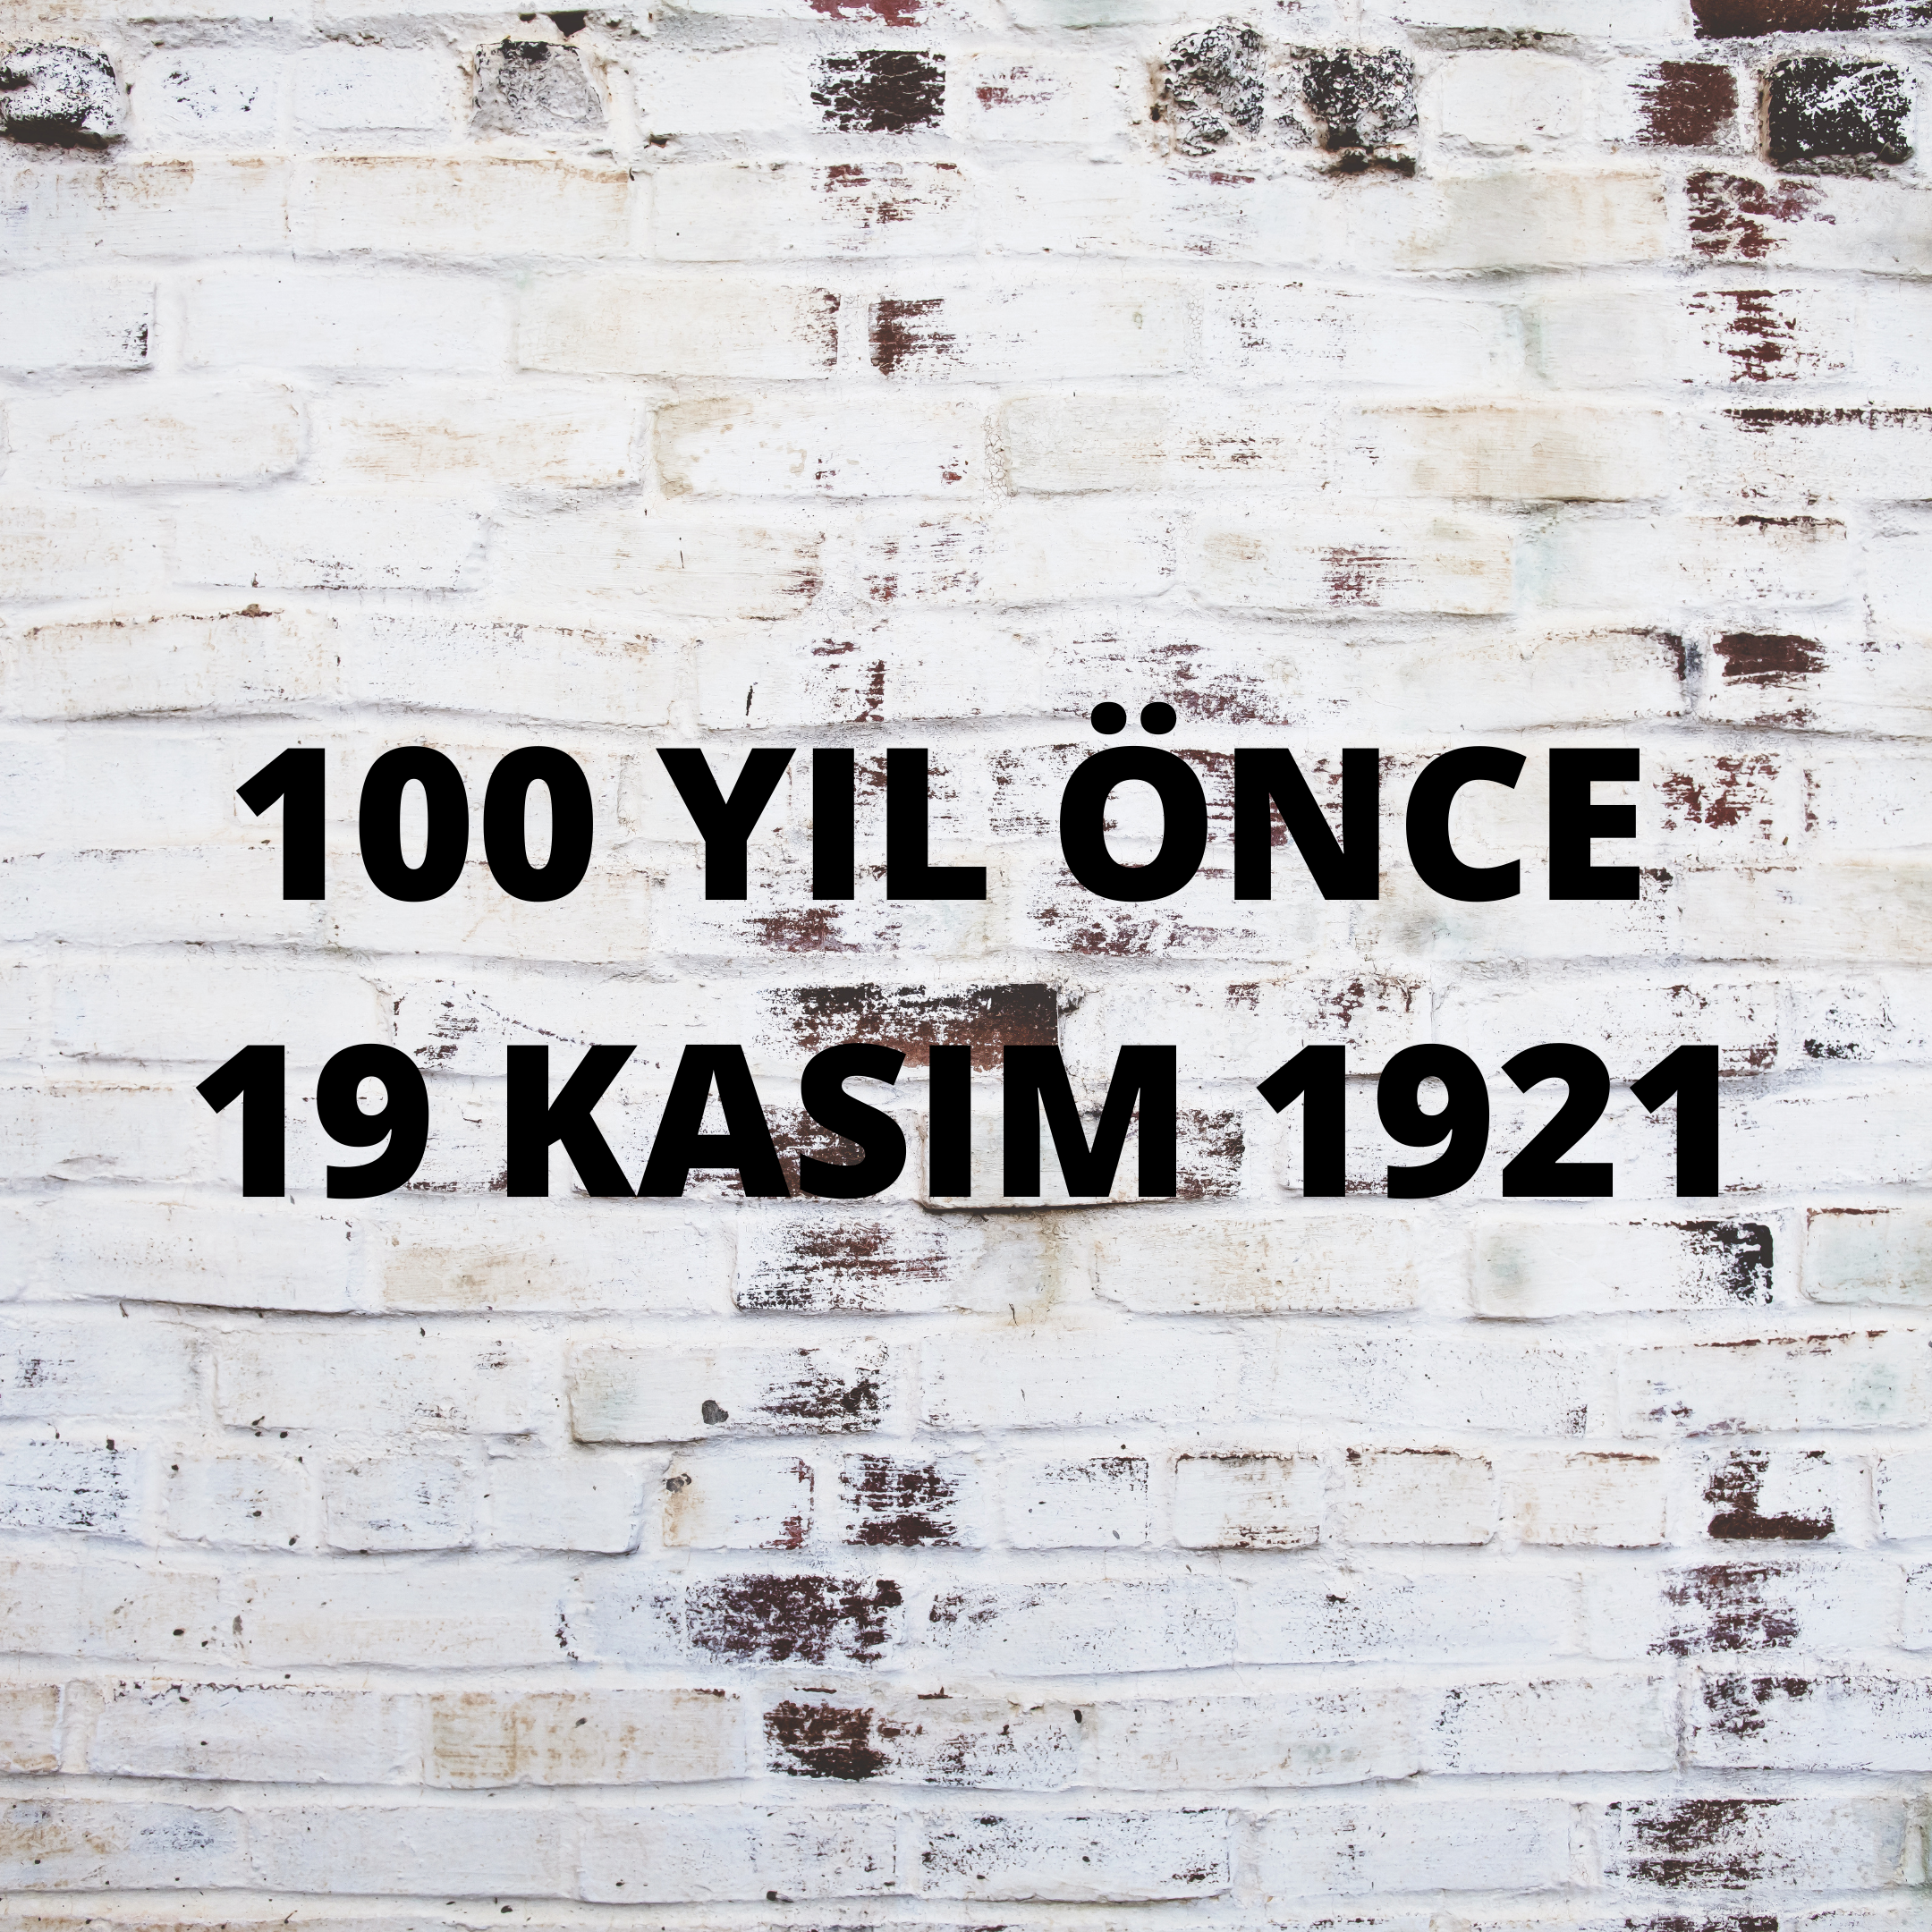 100 YIL ÖNCE 19 KASIM 1921